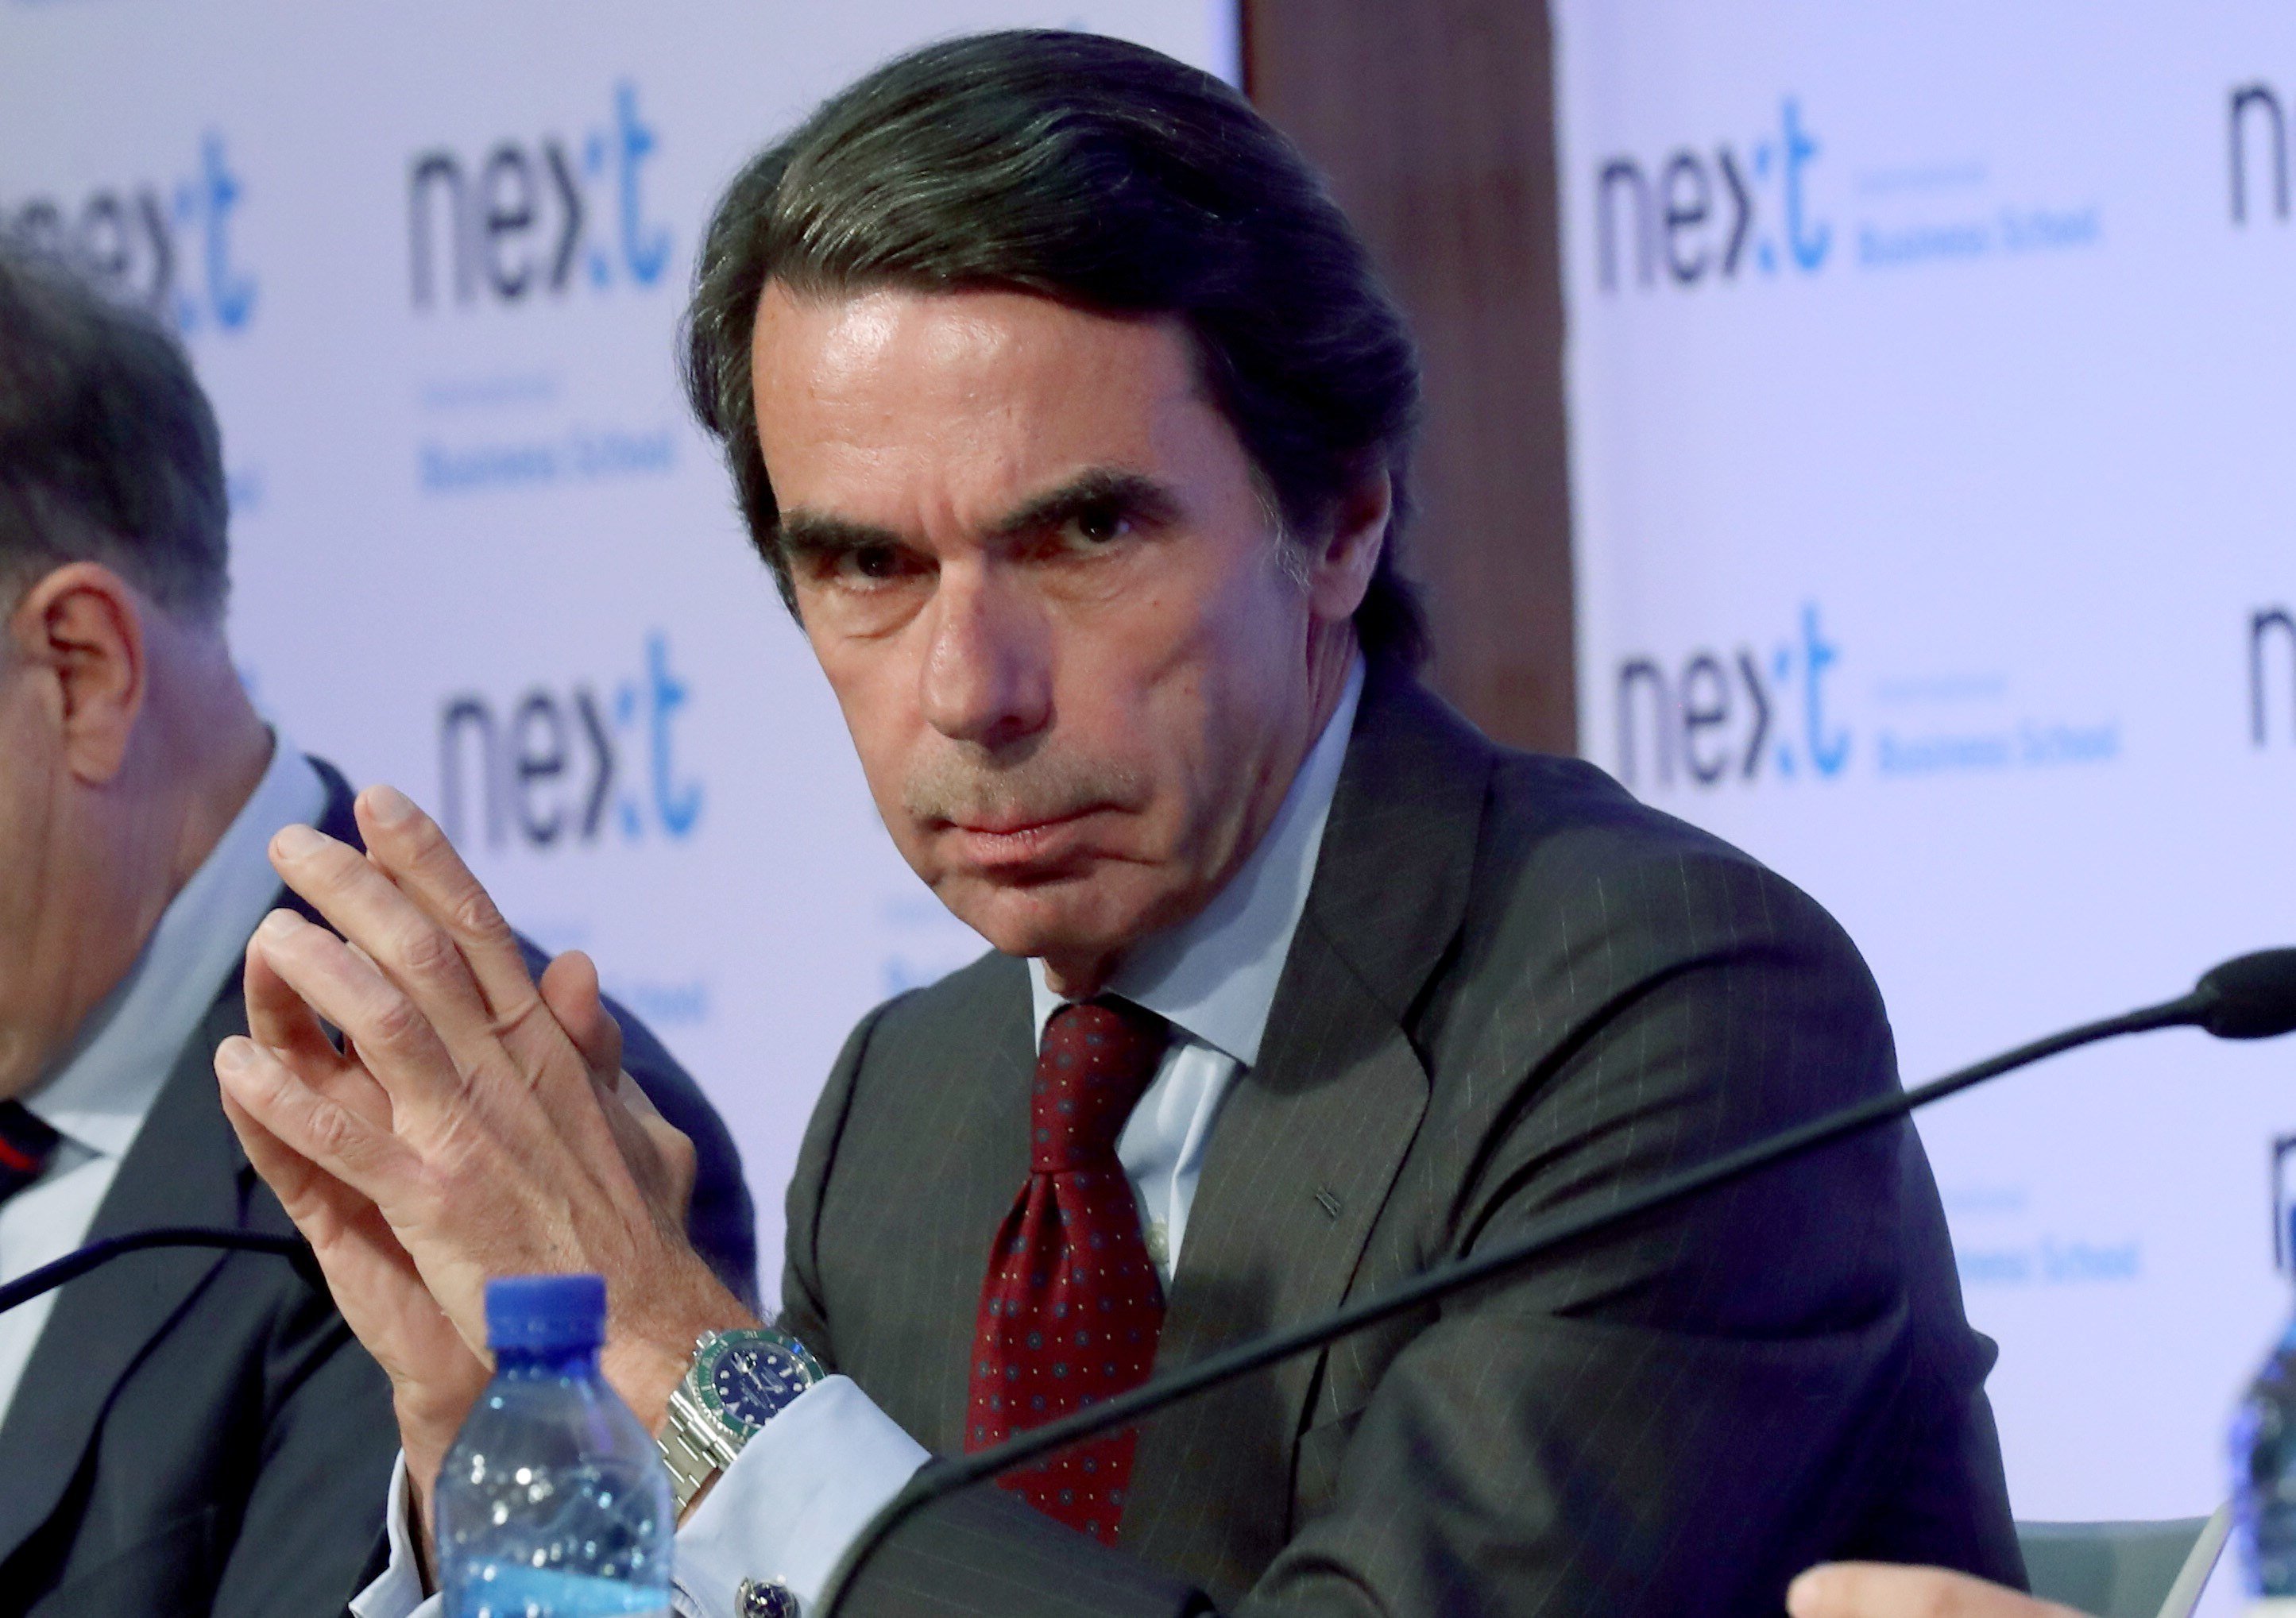 El gobierno de Aznar subvencionó con ordenadores y muebles a la Fundación Franco